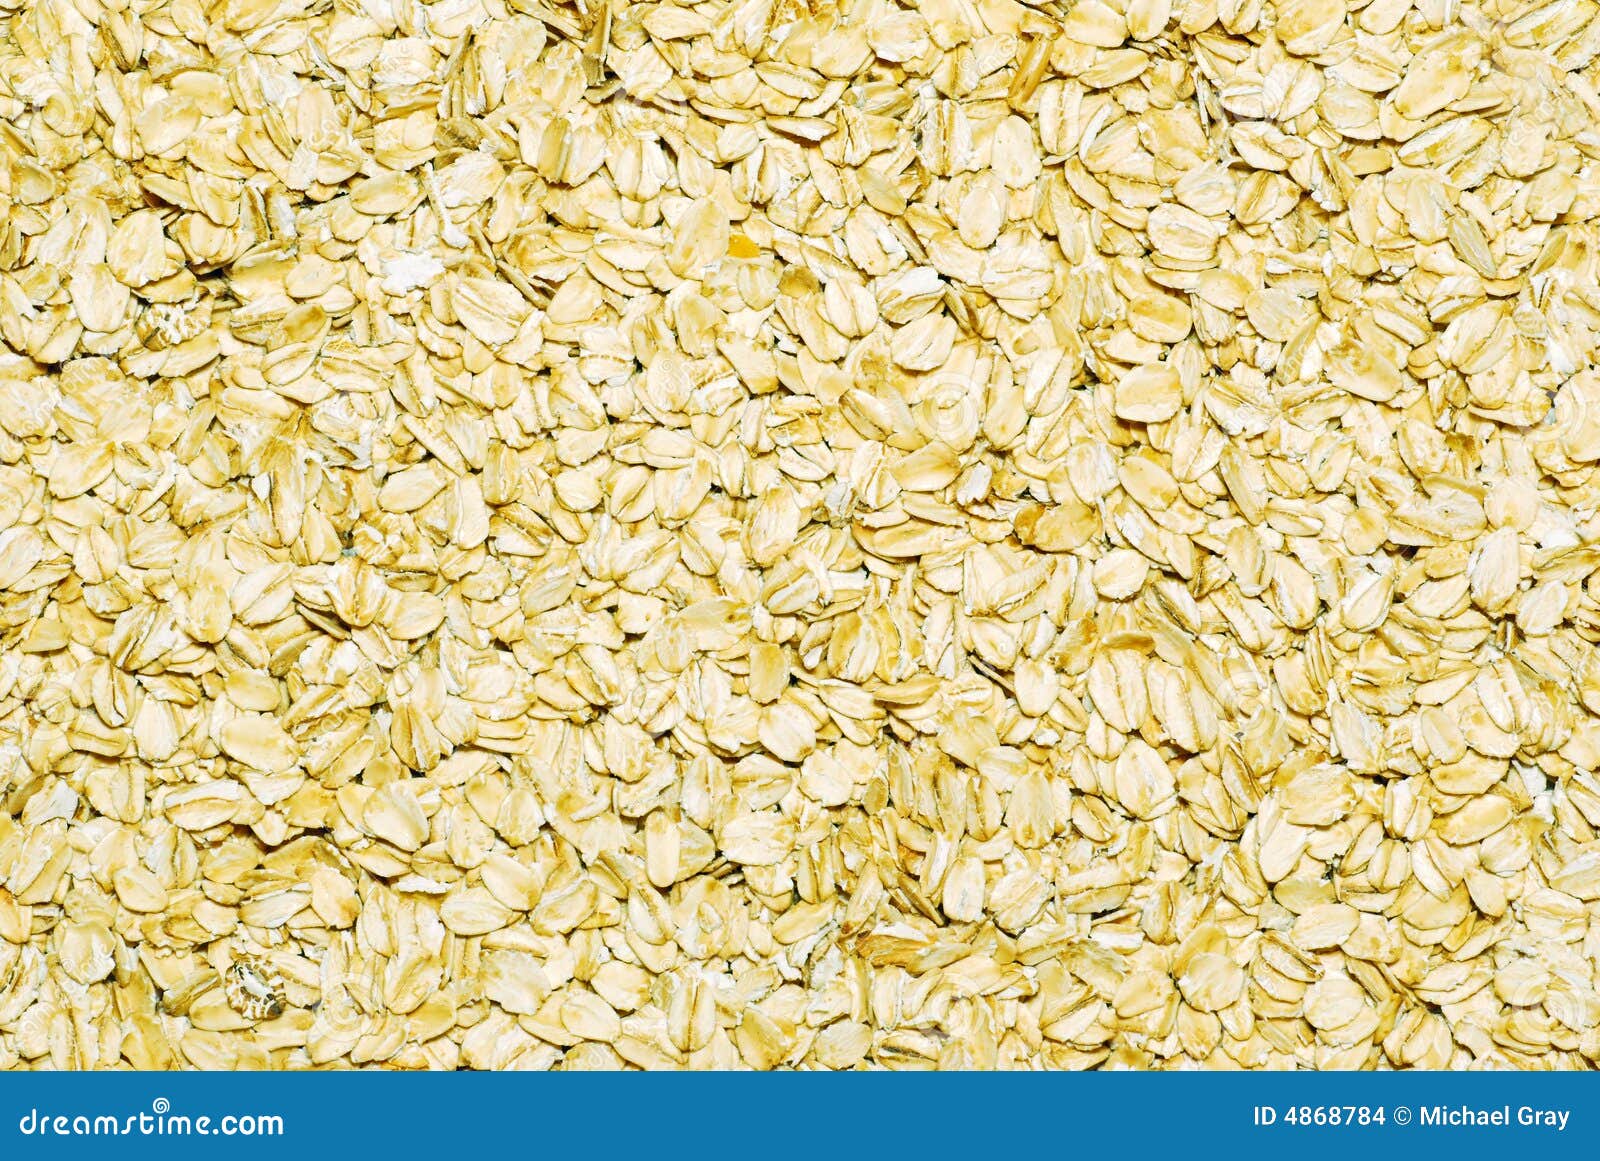 Large flake oatmeal stock photo. Image of lifestyle, energy - 4868784